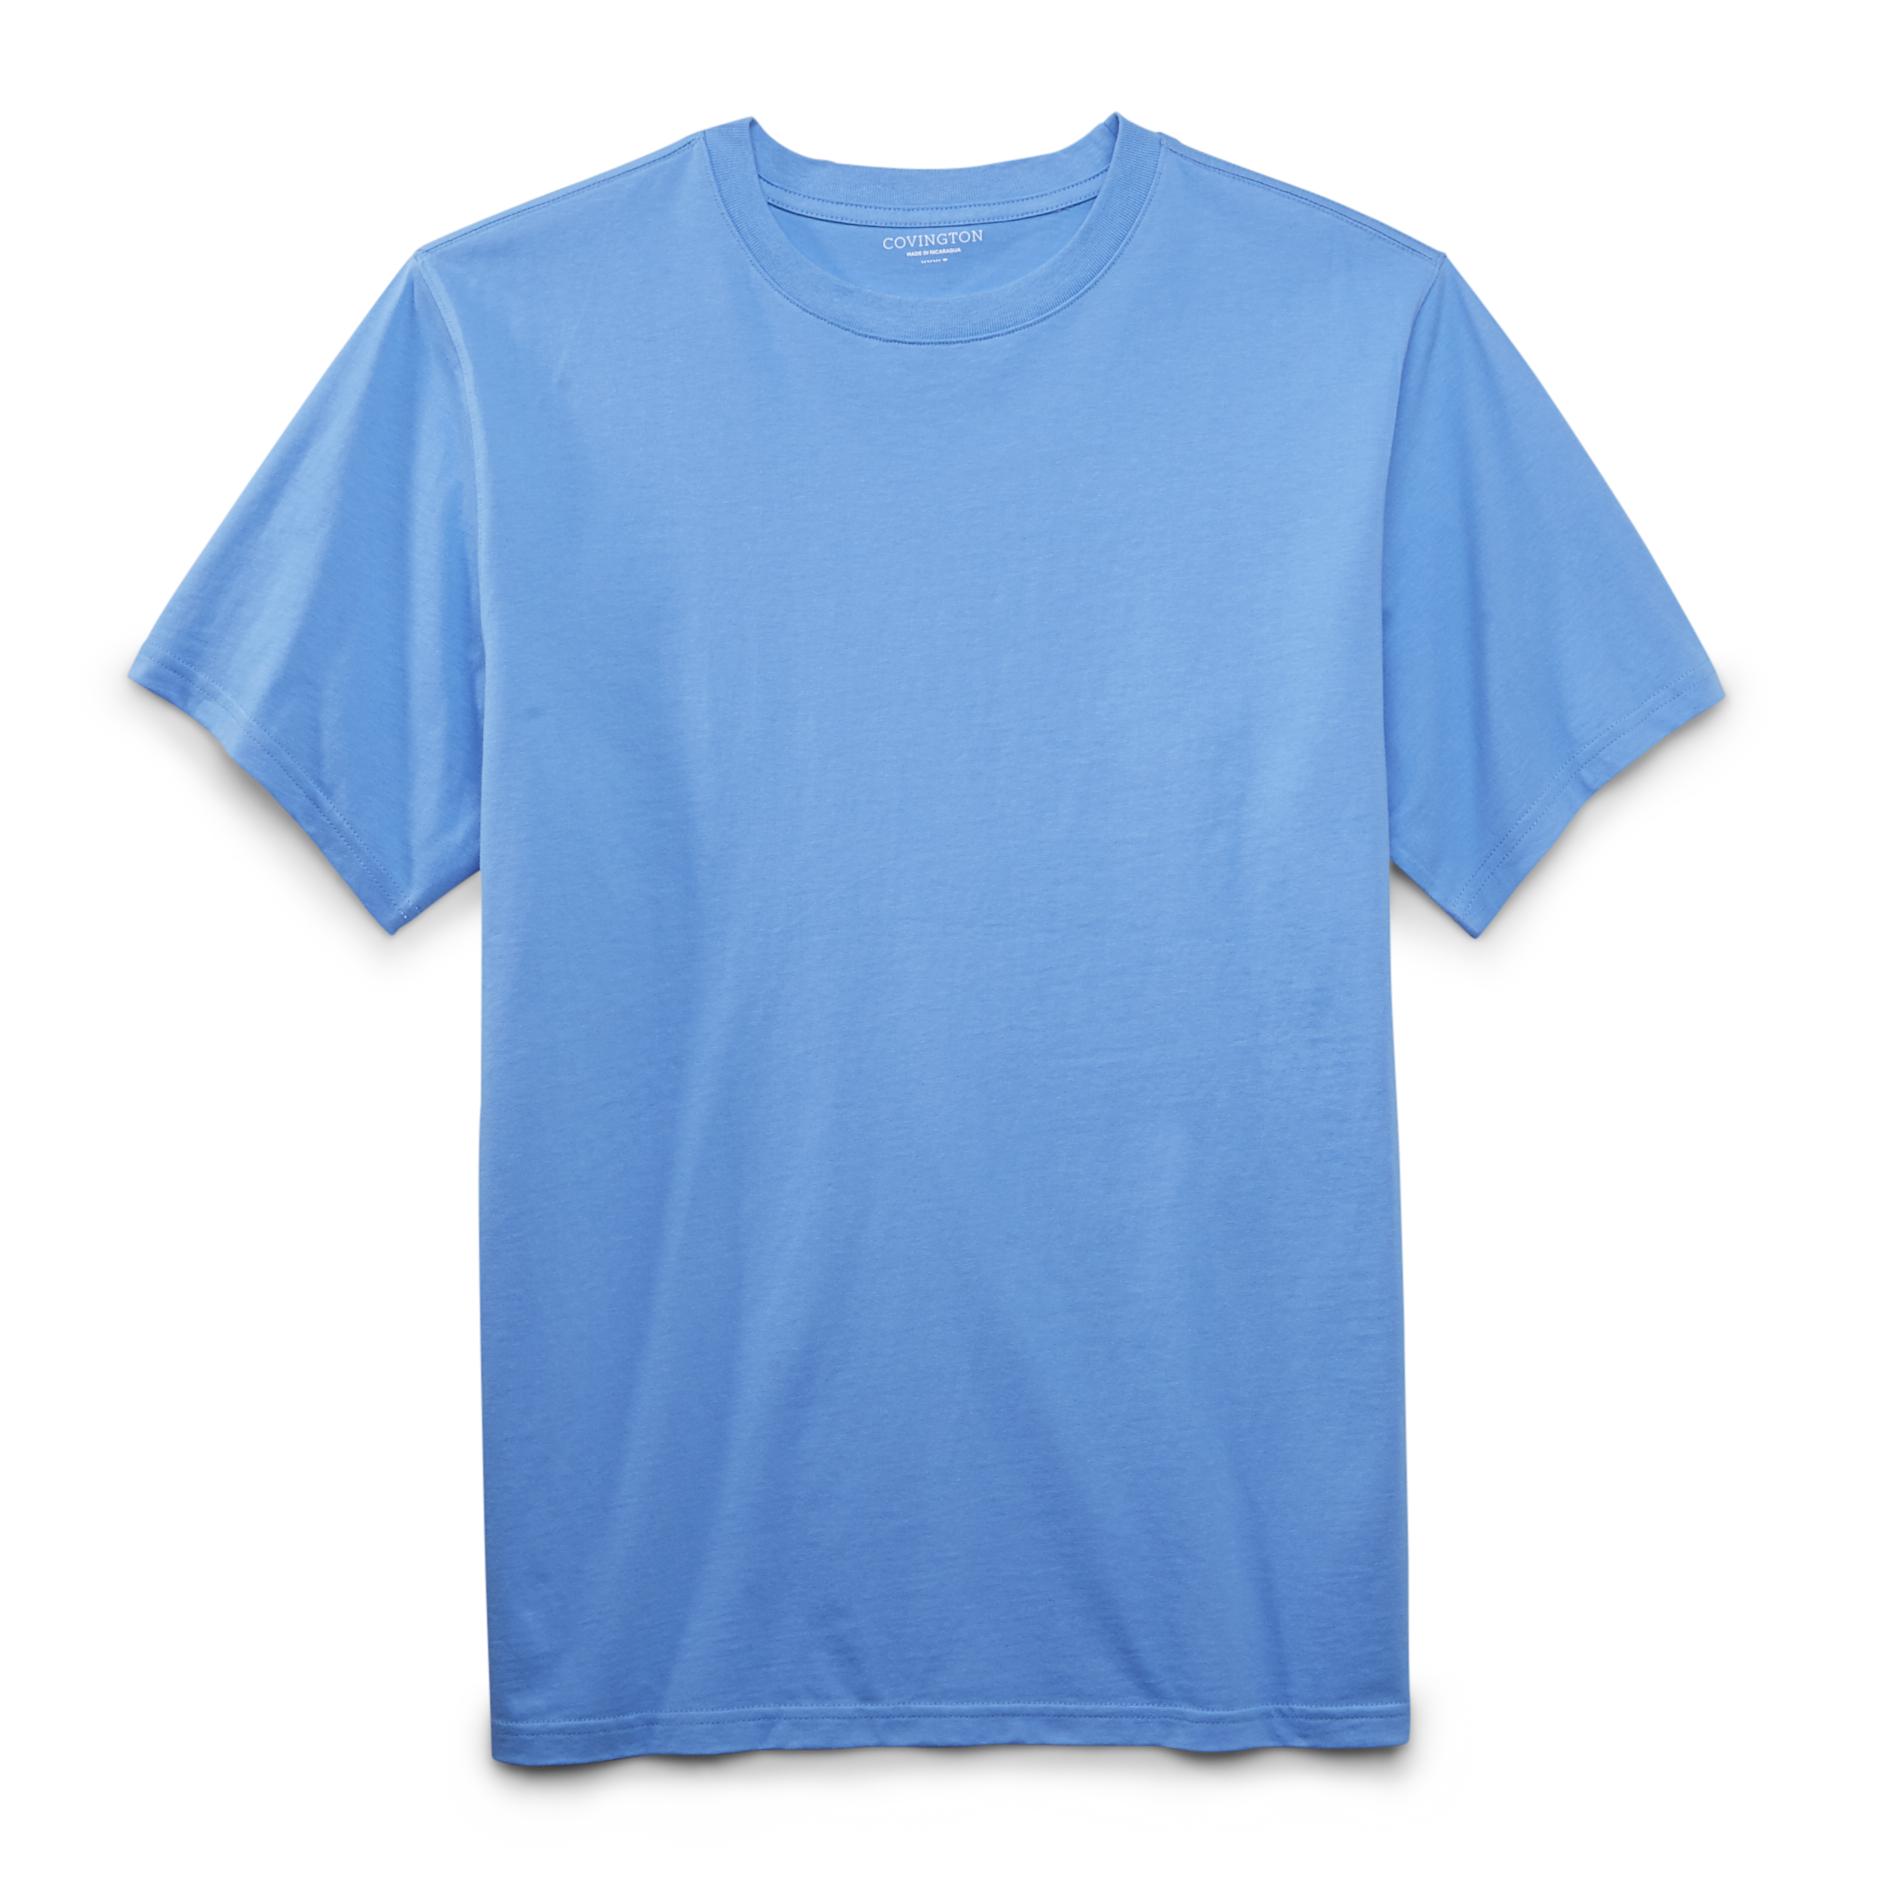 Covington Men's Big & Tall Cotton T-Shirt